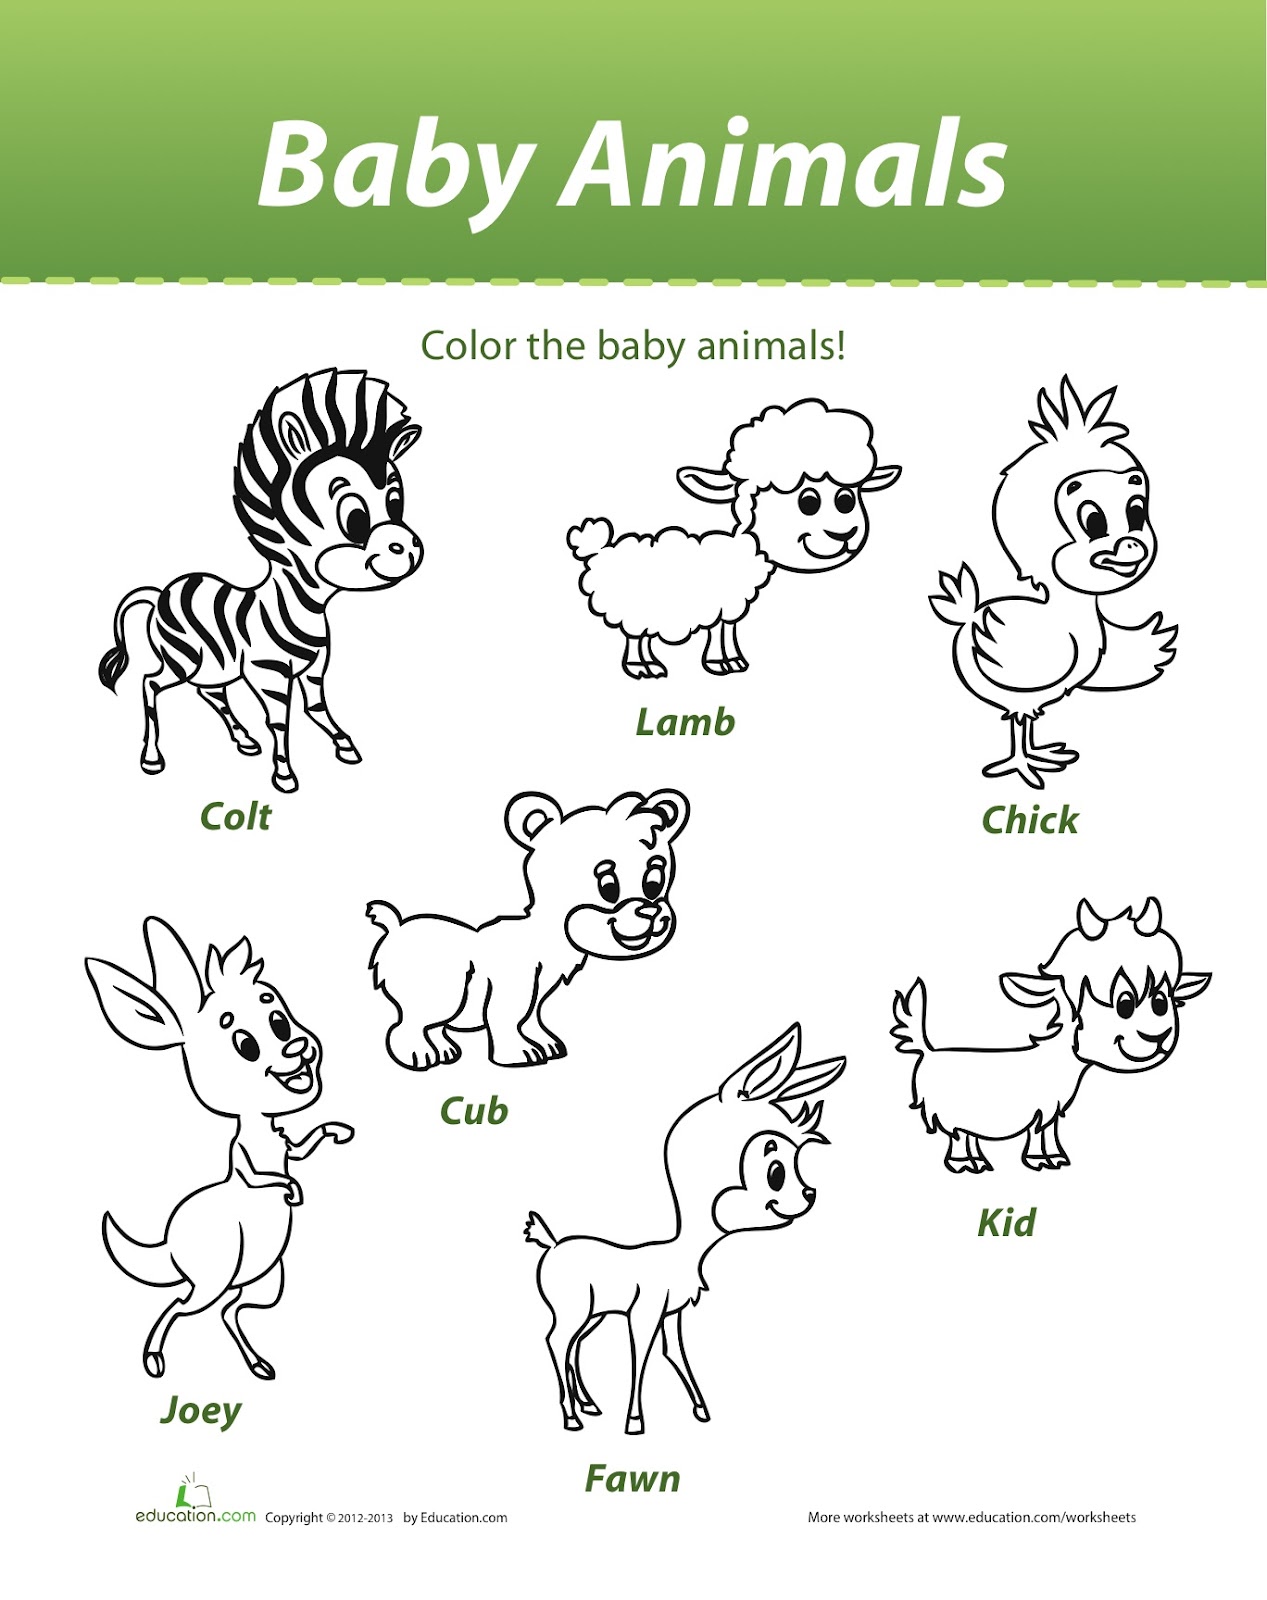 Luna and Lara: Baby Animals Colouring Sheet!